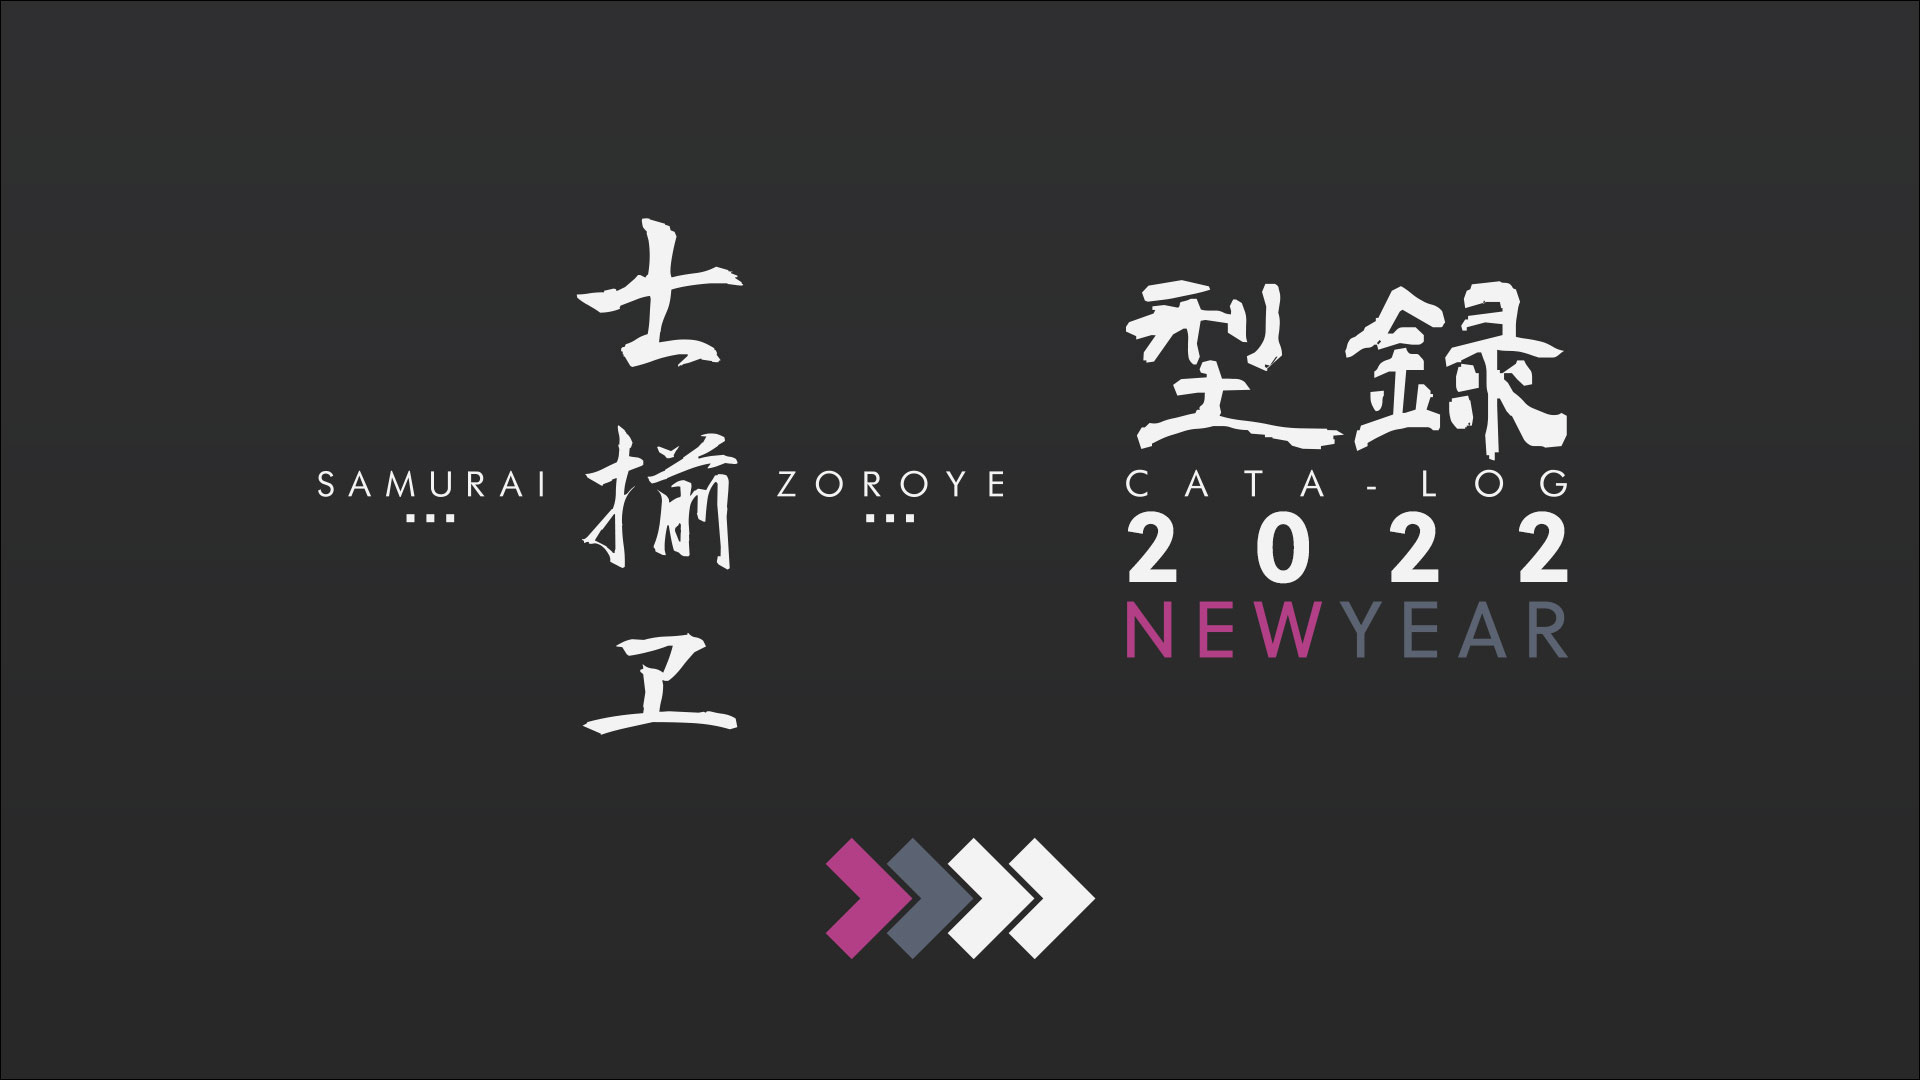 [PHOTO:SAMURAI-ZOROYE CATALOG 2022 NEW YEAR]